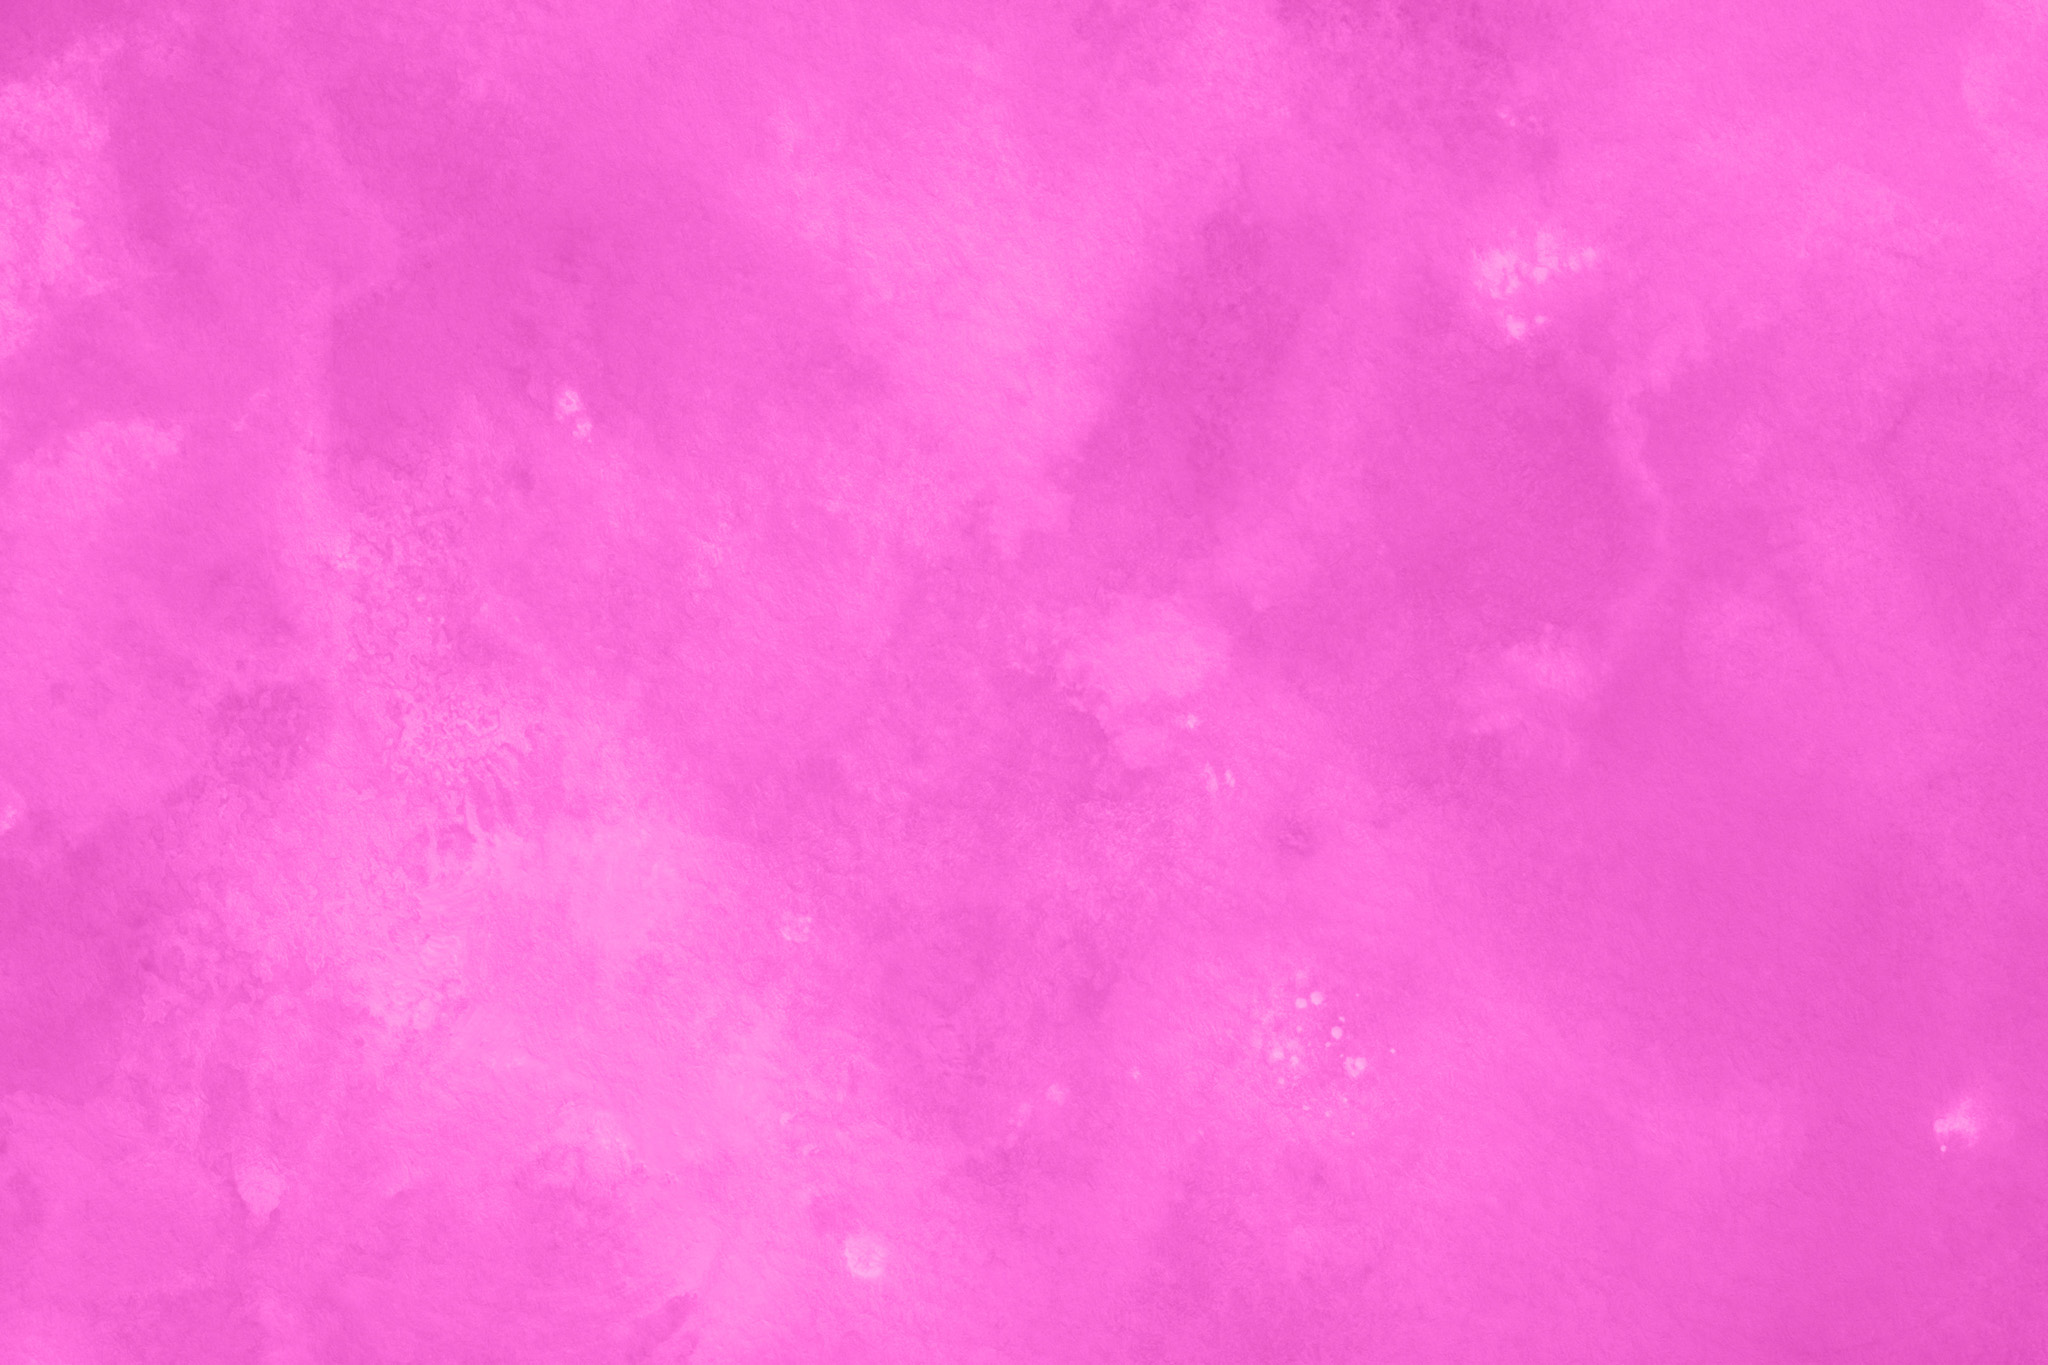 おしゃれなピンクのかっこいい壁紙 の画像素材を無料ダウンロード 1 背景フリー素材 Beiz Images